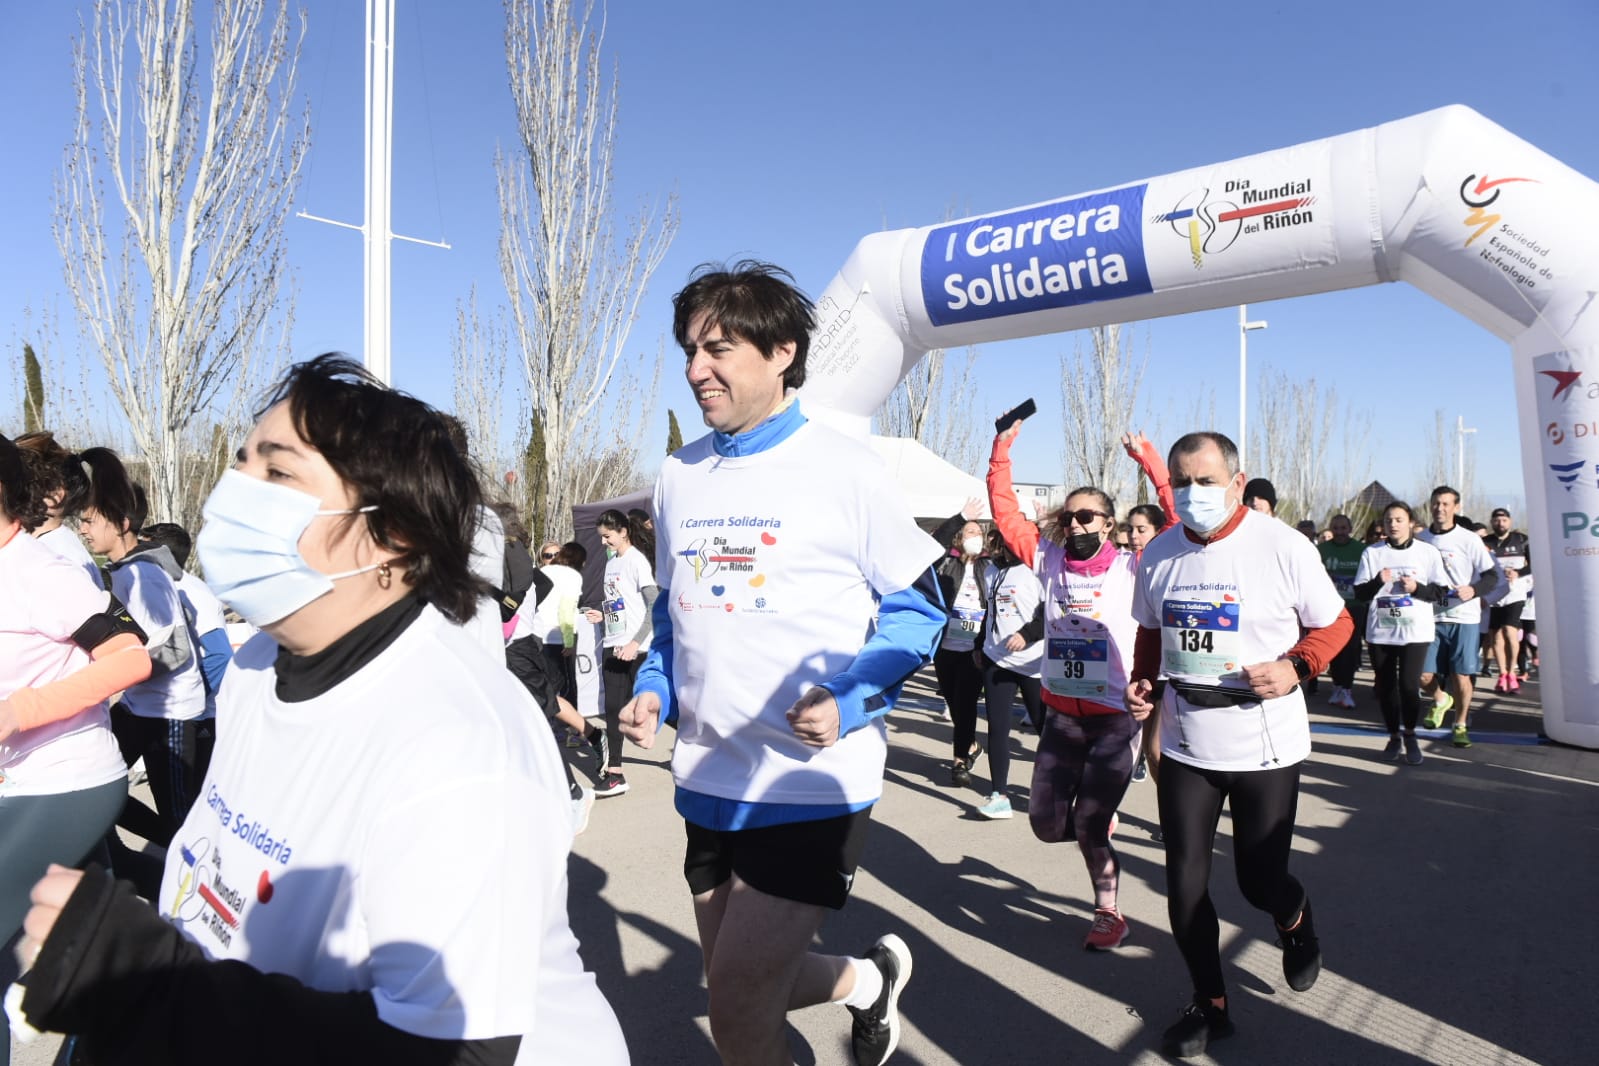 Nota informativa - Unas 400 personas participan en Madrid en la “I Carrera Solidaria por la Salud Renal” con el fin de sensibilizar sobre la enfermedad renal y fomentar el deporte y los hábitos de vida saludable como medida de prevención 